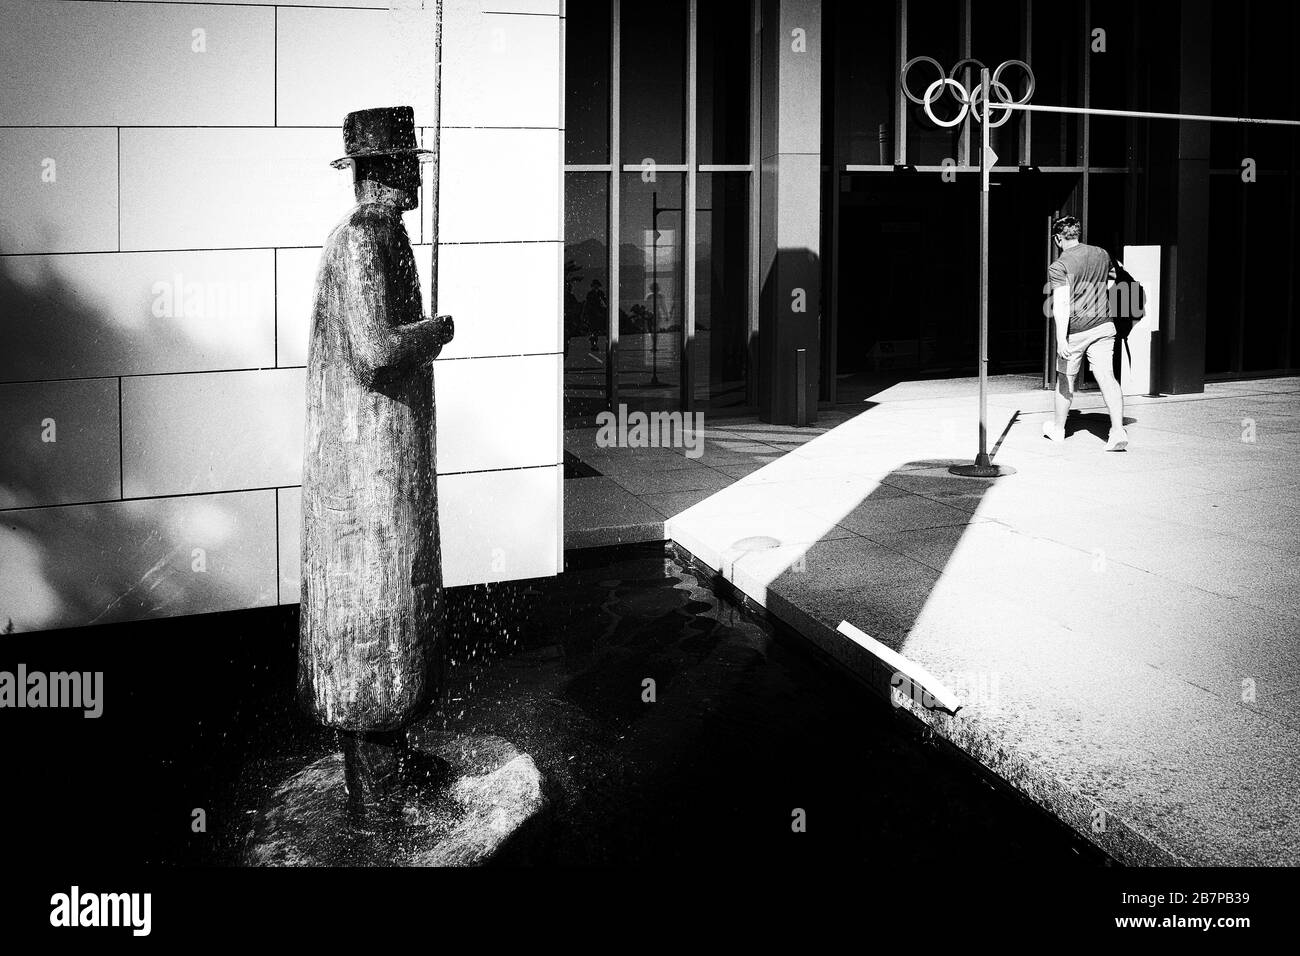 LAUSANNE, SUISSE - 7 août 2019. Le Parc olympique de Lausanne avec sculpture Pluie de Jean-Michel Folon sur la rive du lac Léman Banque D'Images